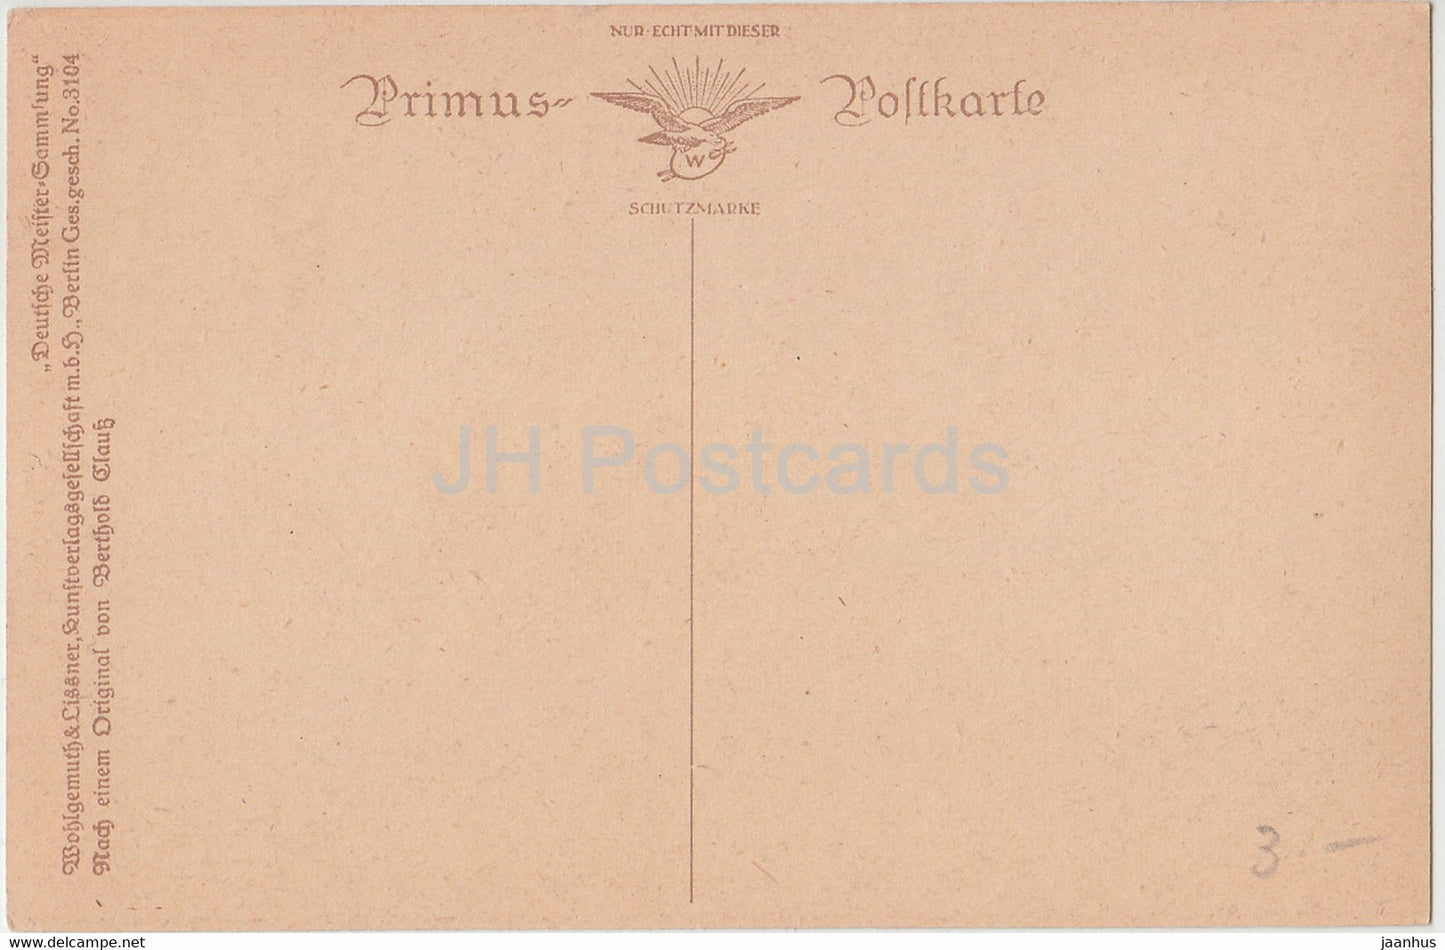 Gemälde von Berthold Clauss – Einsame Halde – Primus – 3104 – deutsche Kunst – alte Postkarte – Deutschland – unbenutzt